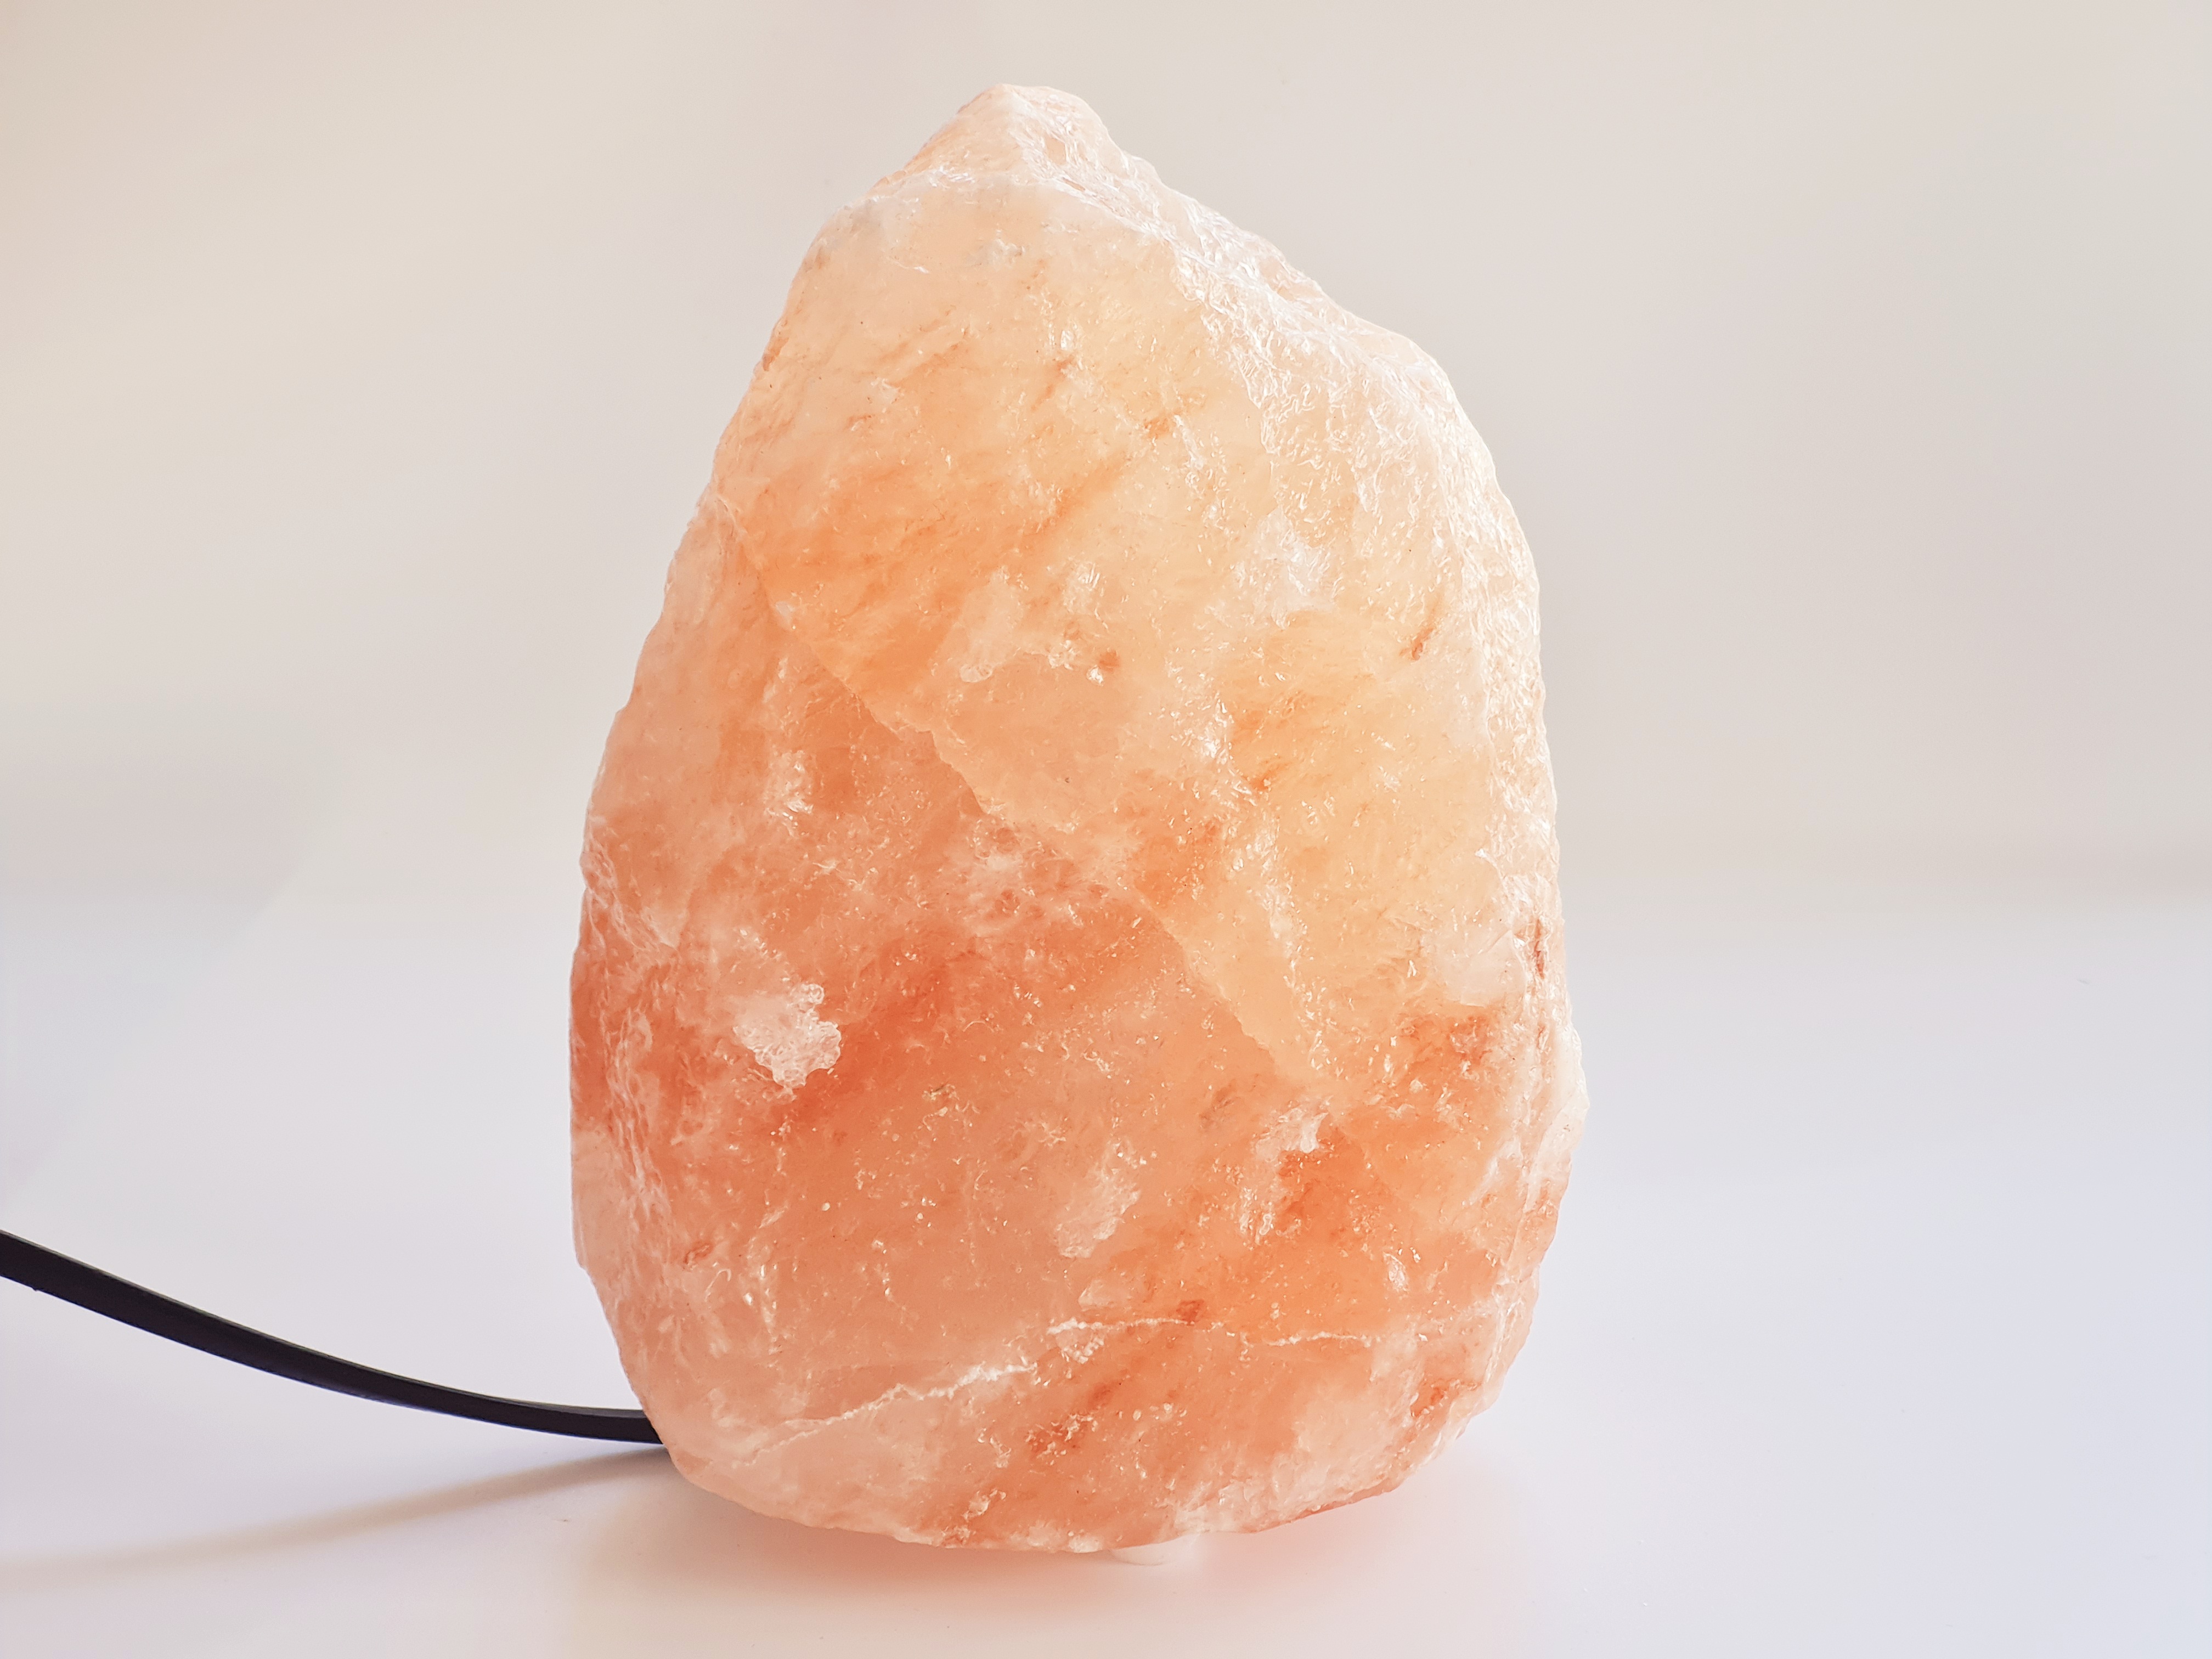 Une lampe de sel de l'Himalaya brut pour décorer vos intérieurs et profiter  des bienfaits des lampes de sel (purifier l'air avec le sel, bien-être…).